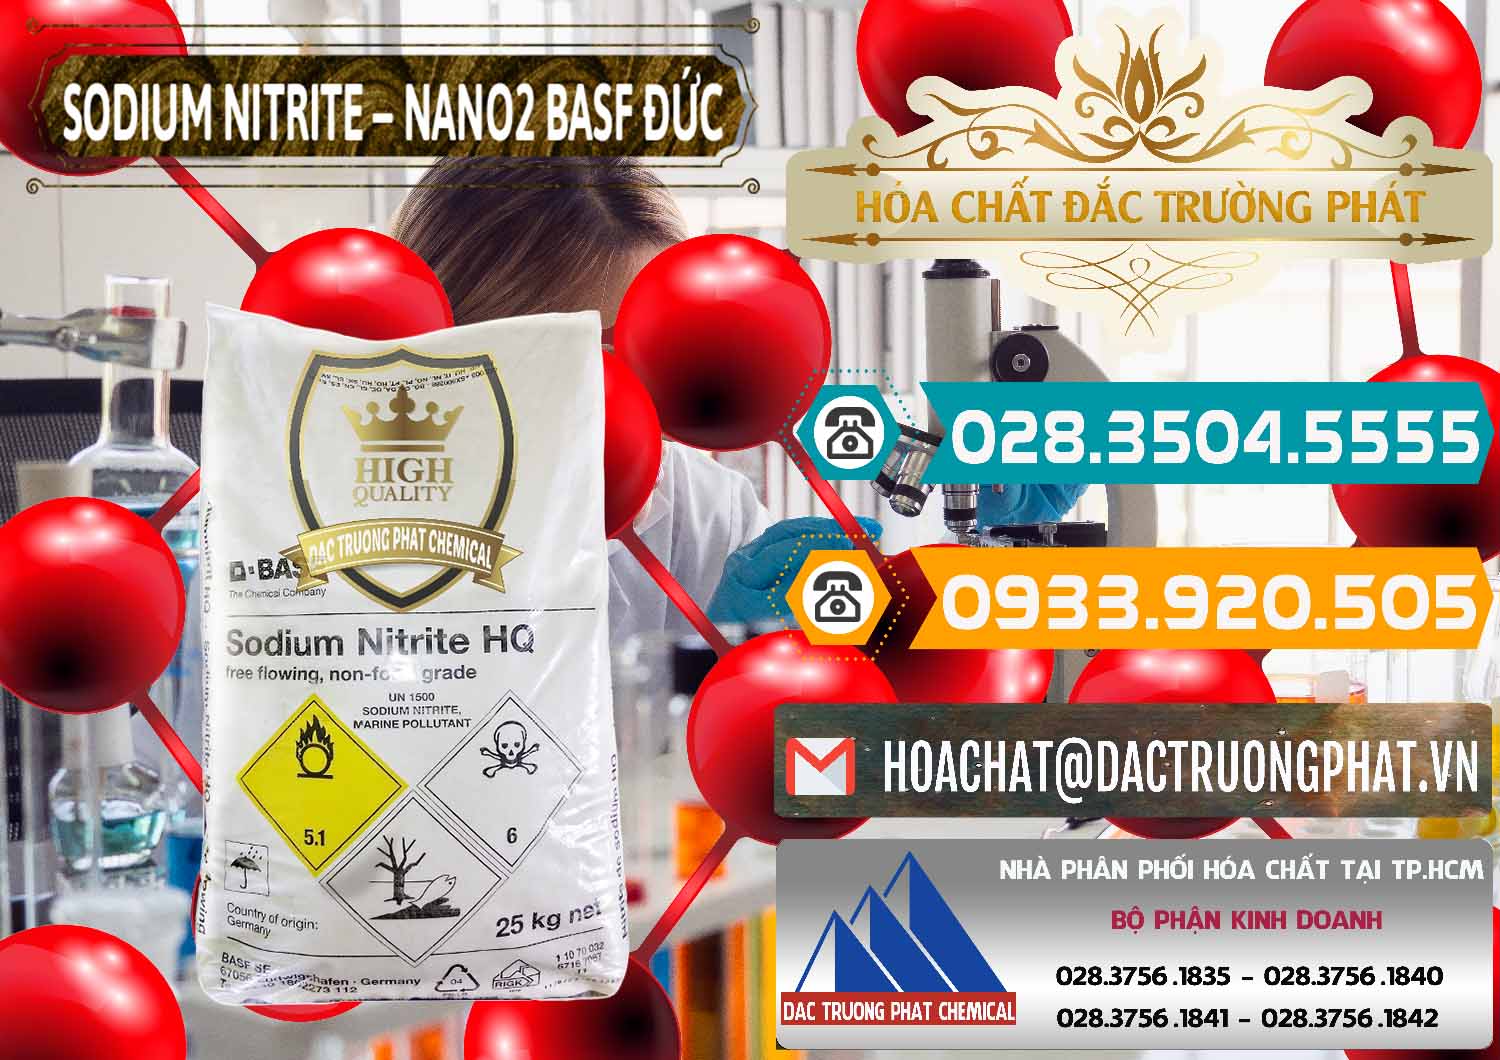 Đơn vị chuyên bán _ cung cấp Sodium Nitrite - NANO2 Đức BASF Germany - 0148 - Cty nhập khẩu & phân phối hóa chất tại TP.HCM - congtyhoachat.vn